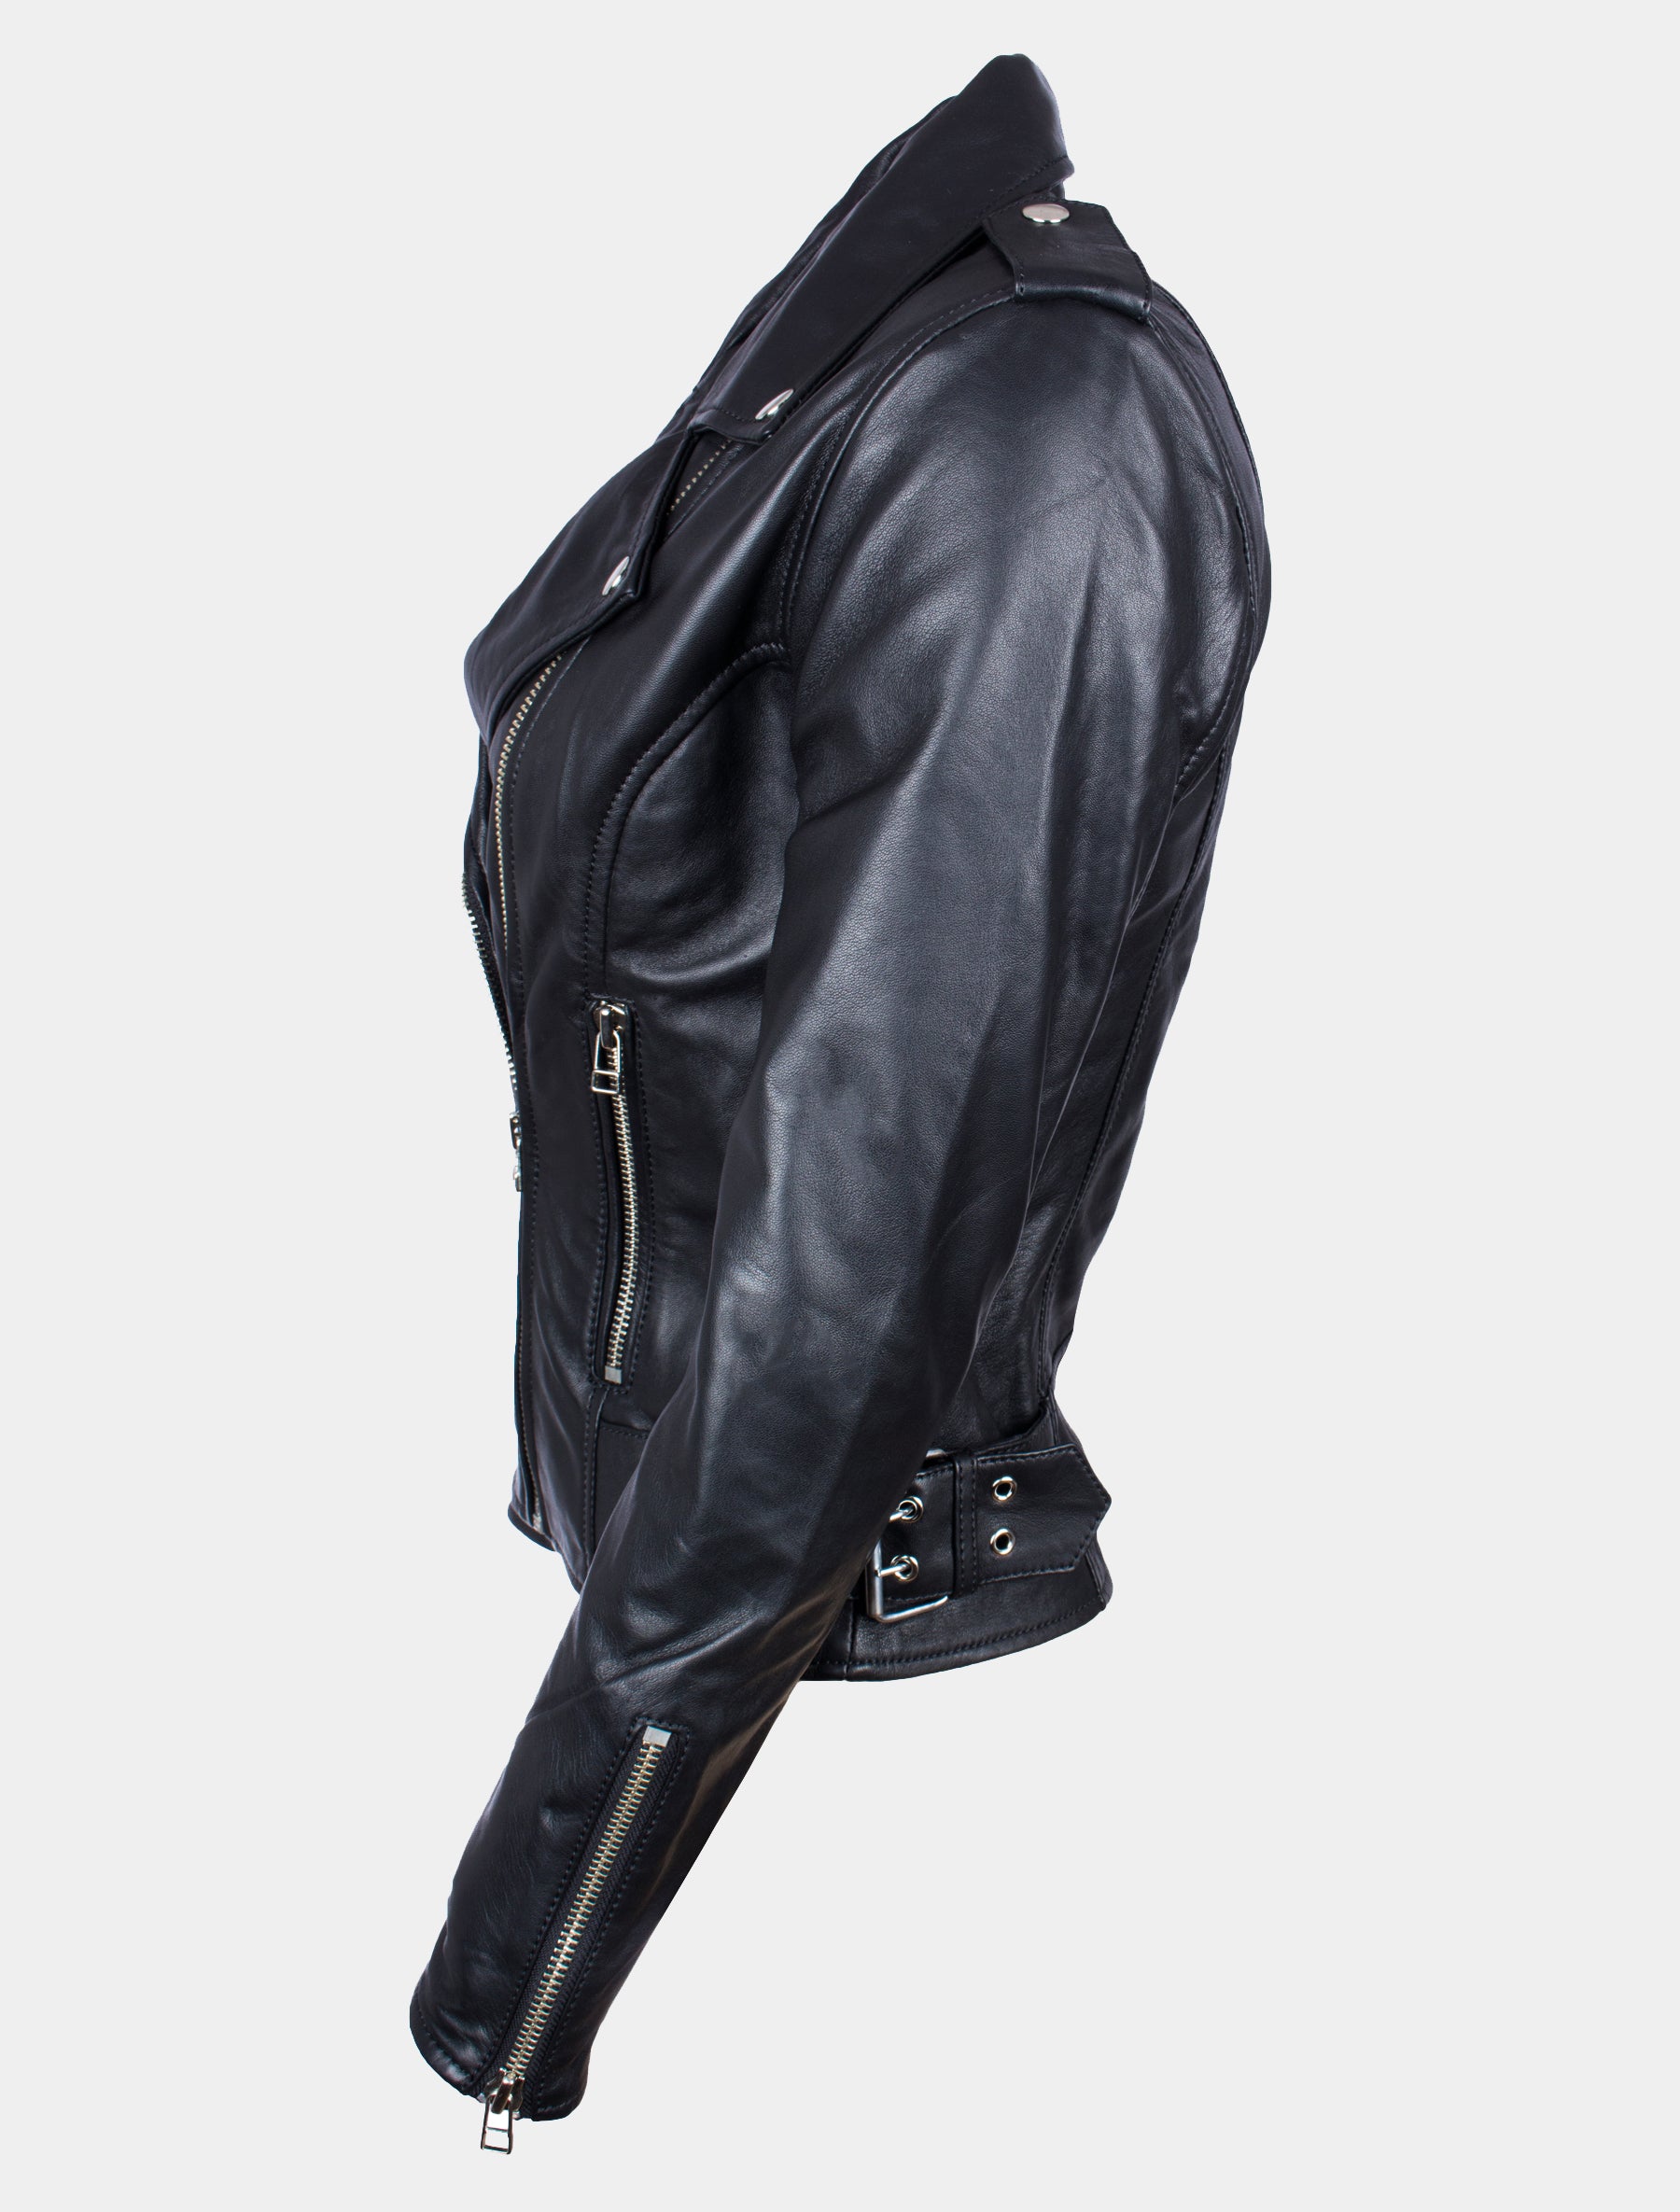 Damen Bikerjacke mit Riegel, Reißverschluss und Reverskragen - Alea in schwarz